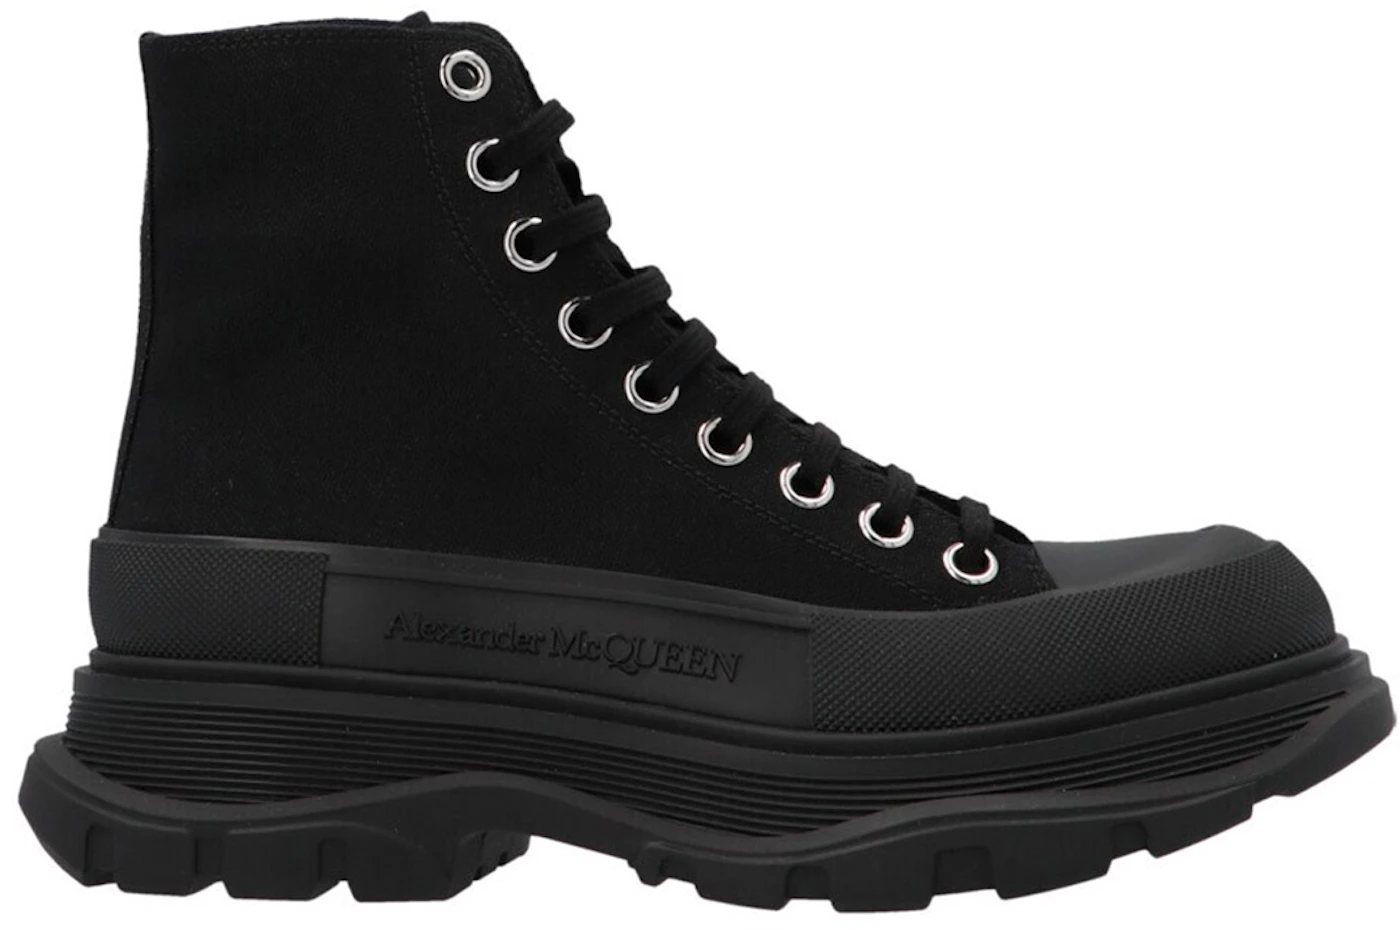 Alexander McQueen Sneaker Boots 9 Size For men  Alexander mcqueen sneaker,  Alexander mcqueen boots, Alexander mcqueen shoes